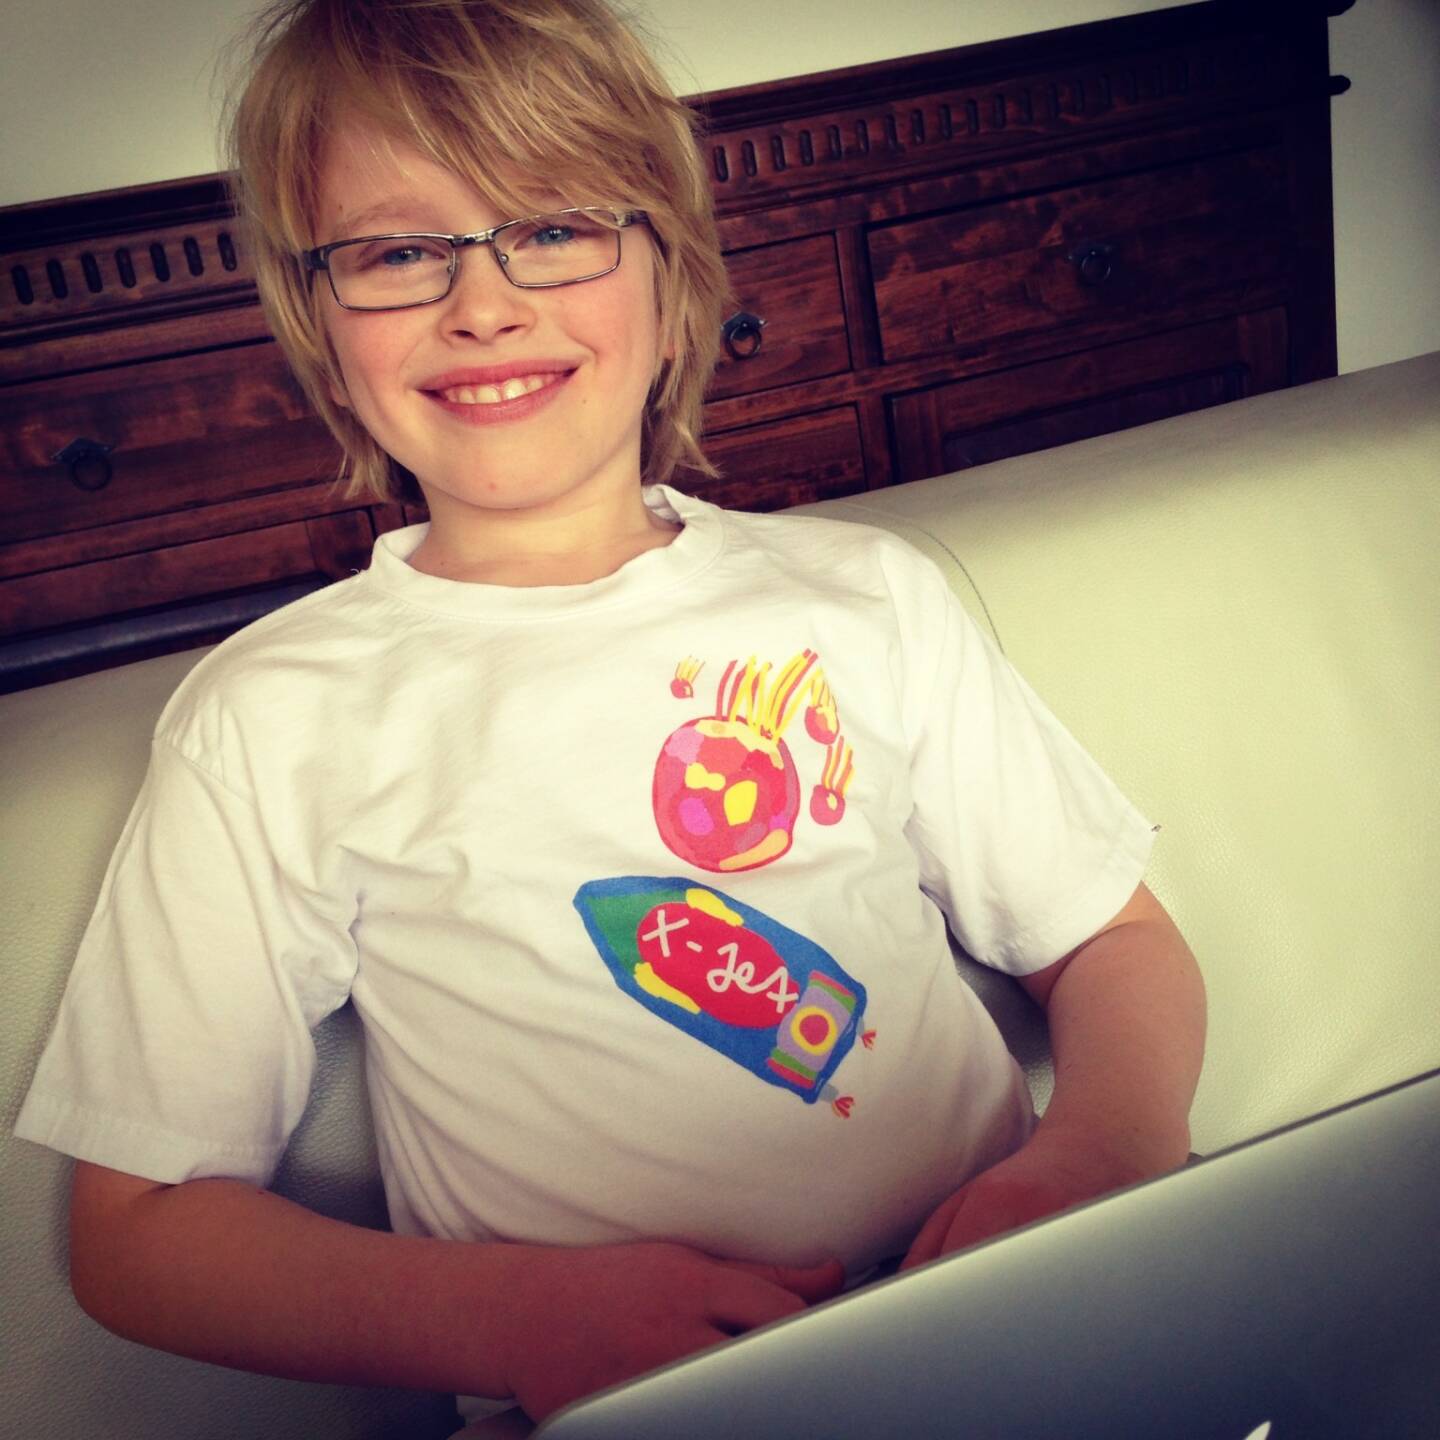 Ian Thomas Steiner startet sehr früh up: Der 9-jährige veröffentlicht iOS Spiel “Meteor Kids” im Apple App Store - http://www.christian-drastil.com/2014/02/08/der_9-jahrige_sohn_eines_ex-kollegen_veroffentlicht_ios_spiel_meteor_kids_im_apple_app_store